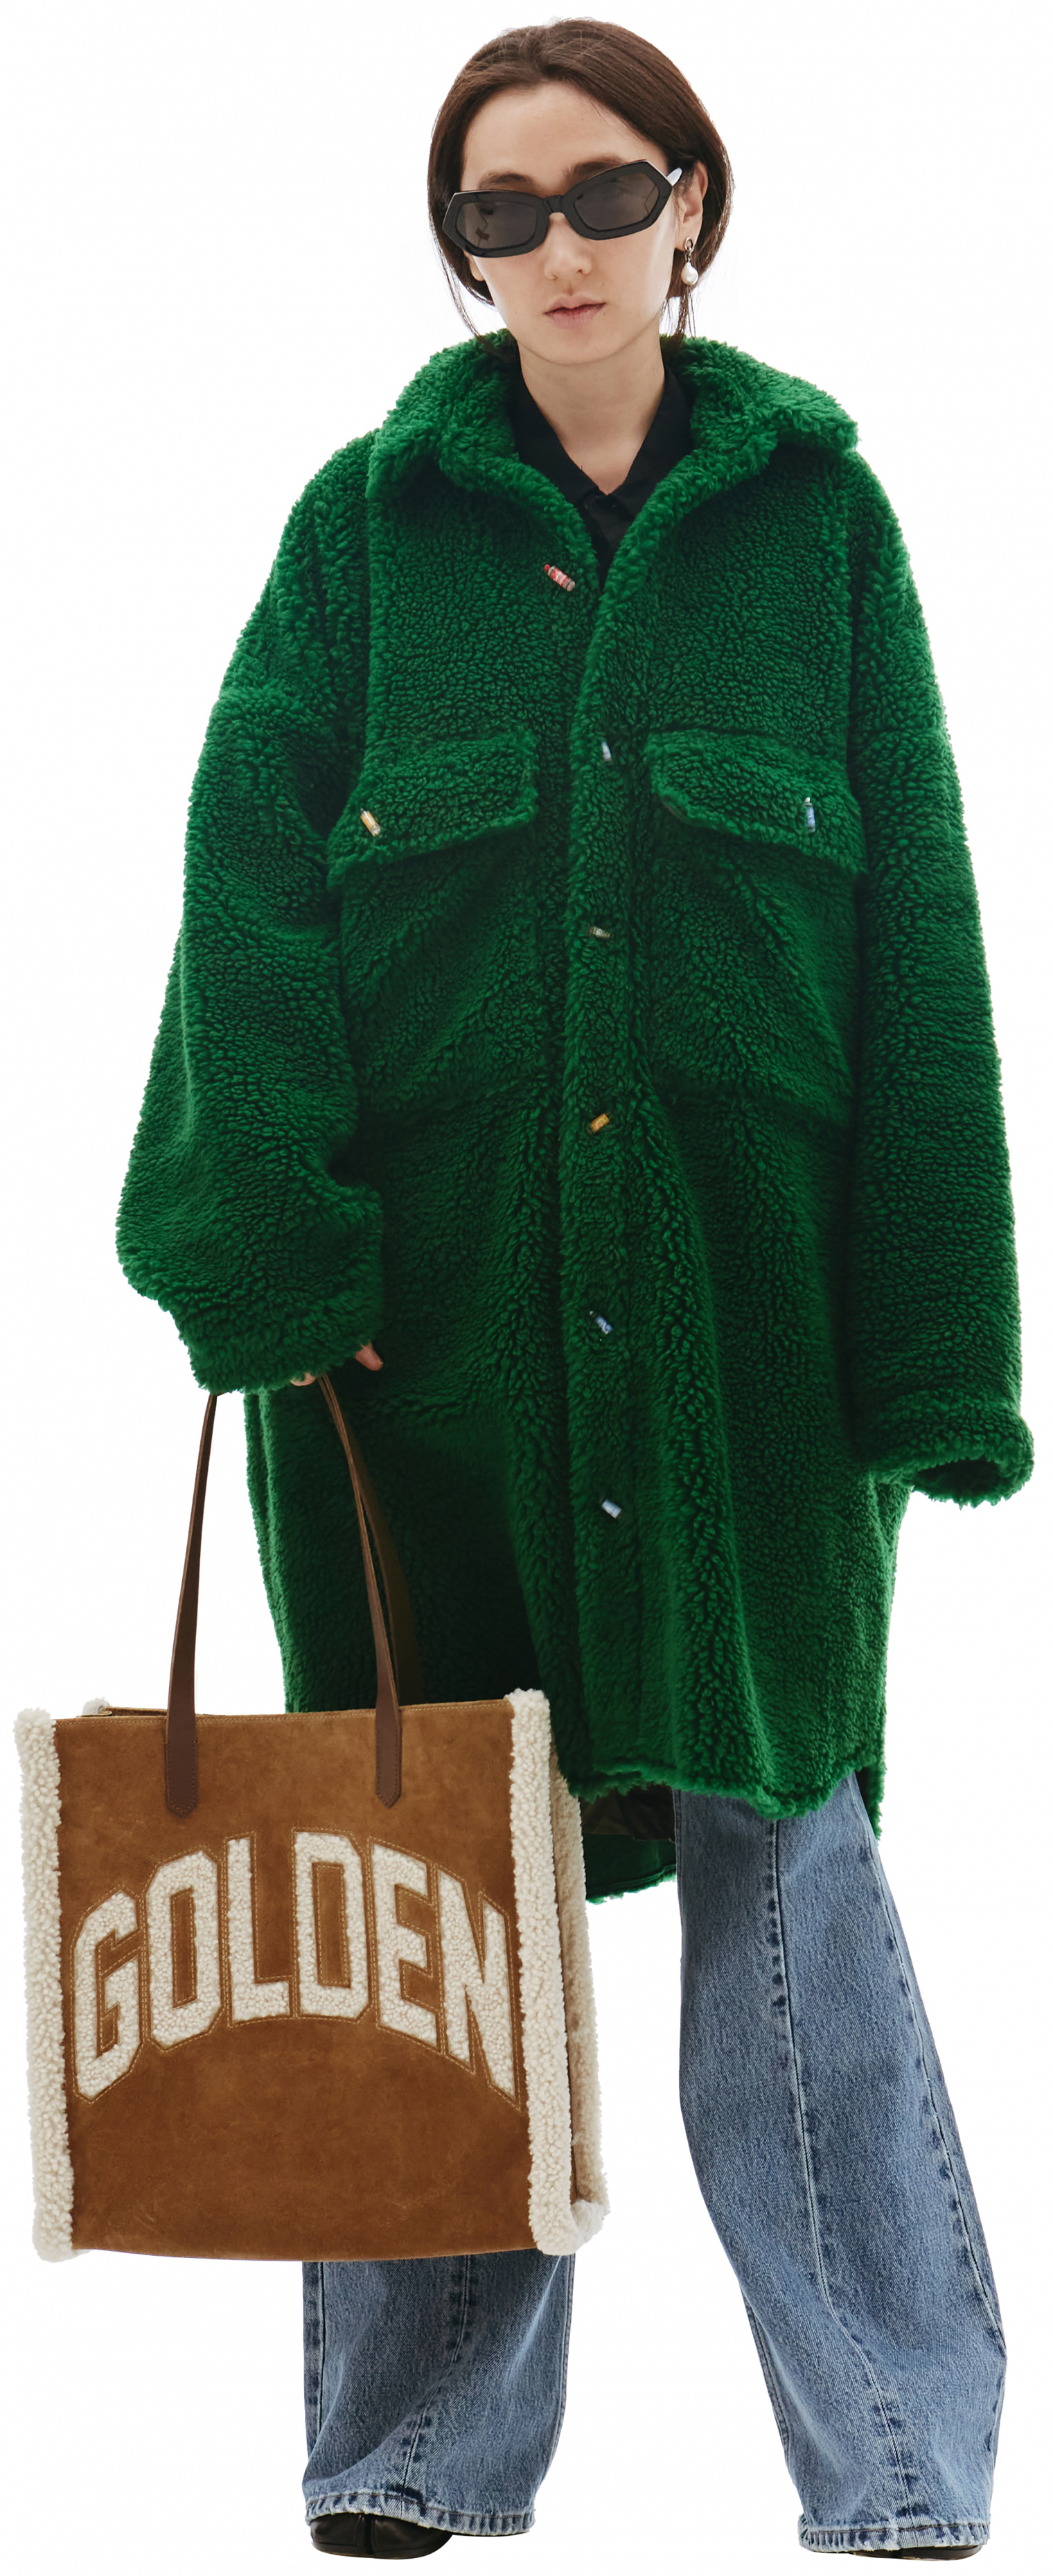 Doublet Recycle Fur Oversized Green Coat